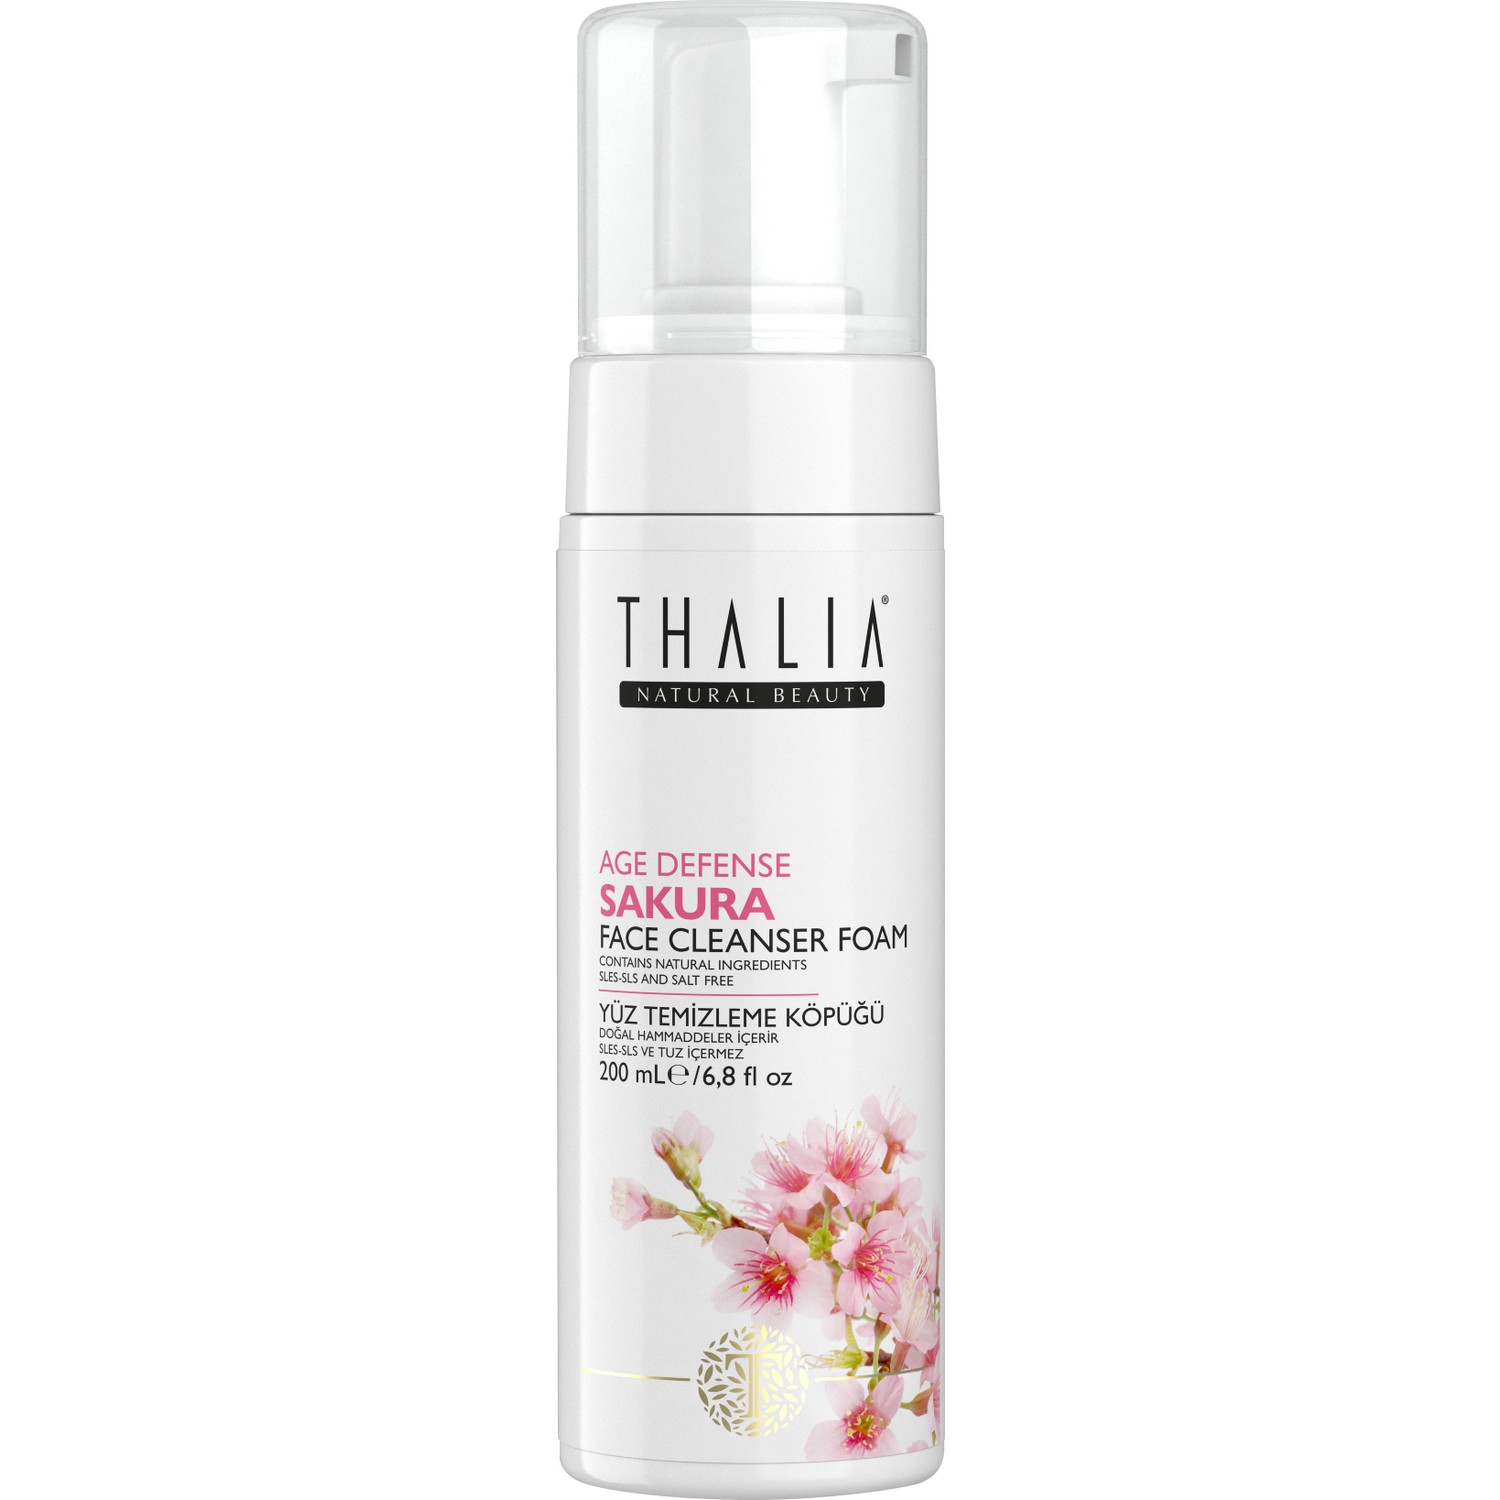 Пенка для умывания Thalia с экстрактом сакуры, 200 мл крем антивозрастной для лица thalia natural beauty age defense sakura 50 мл